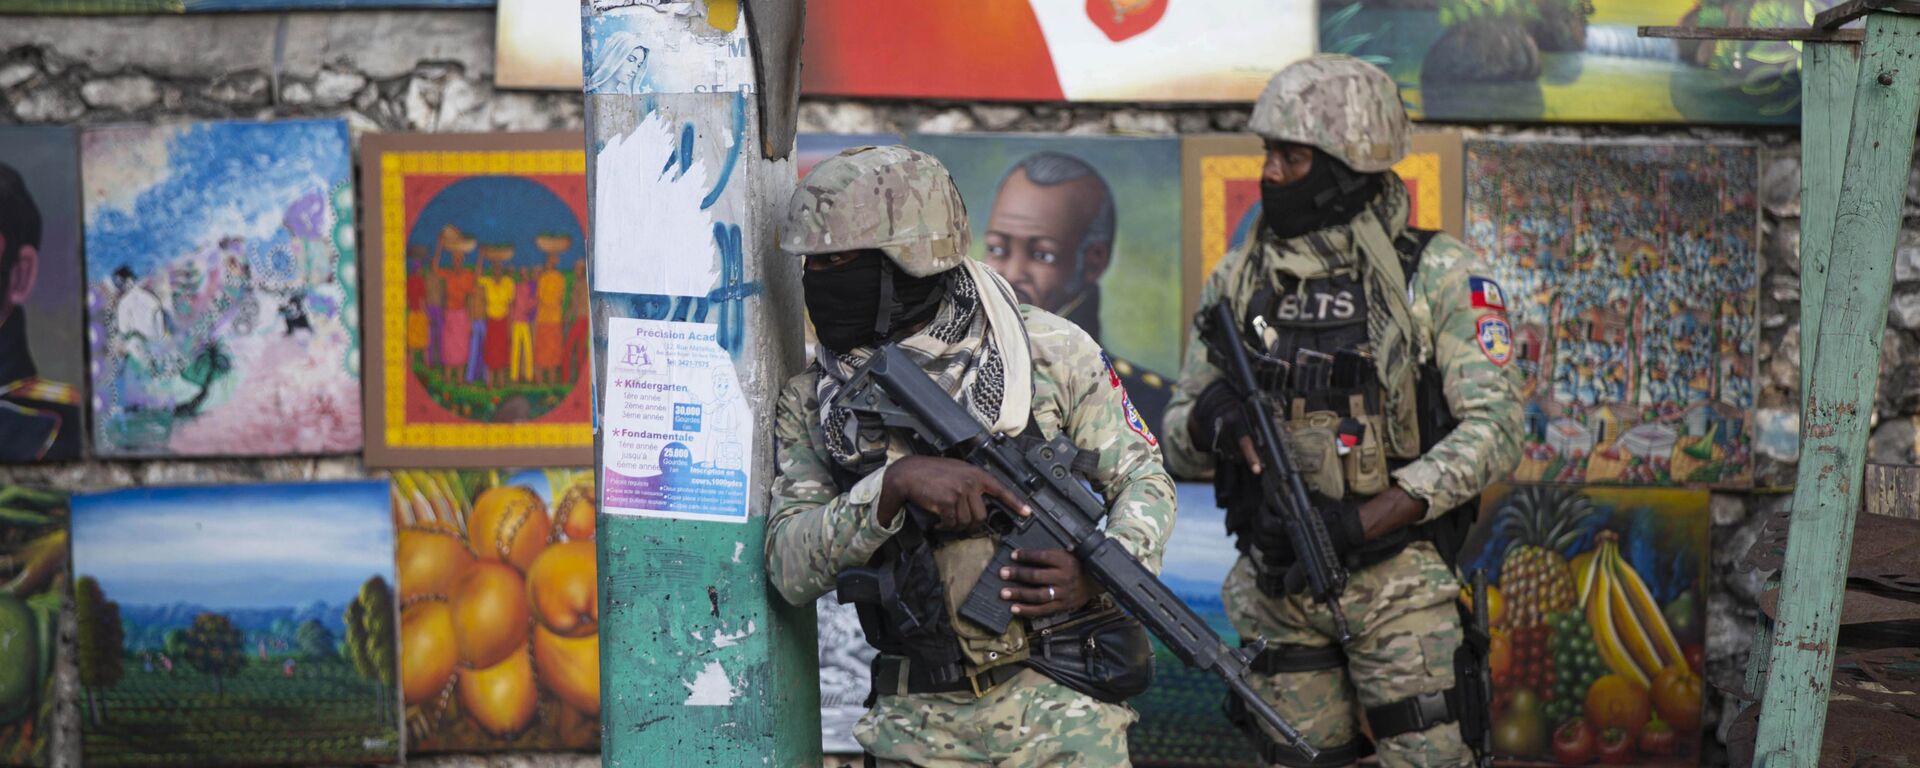 الجنود يراقبون الوضع في شوارع مدينة هايتي بعد اغتيال الرئيس جوفينيل مويس، بورت أو برنس، 7 يوليو 2021 - سبوتنيك عربي, 1920, 11.07.2021